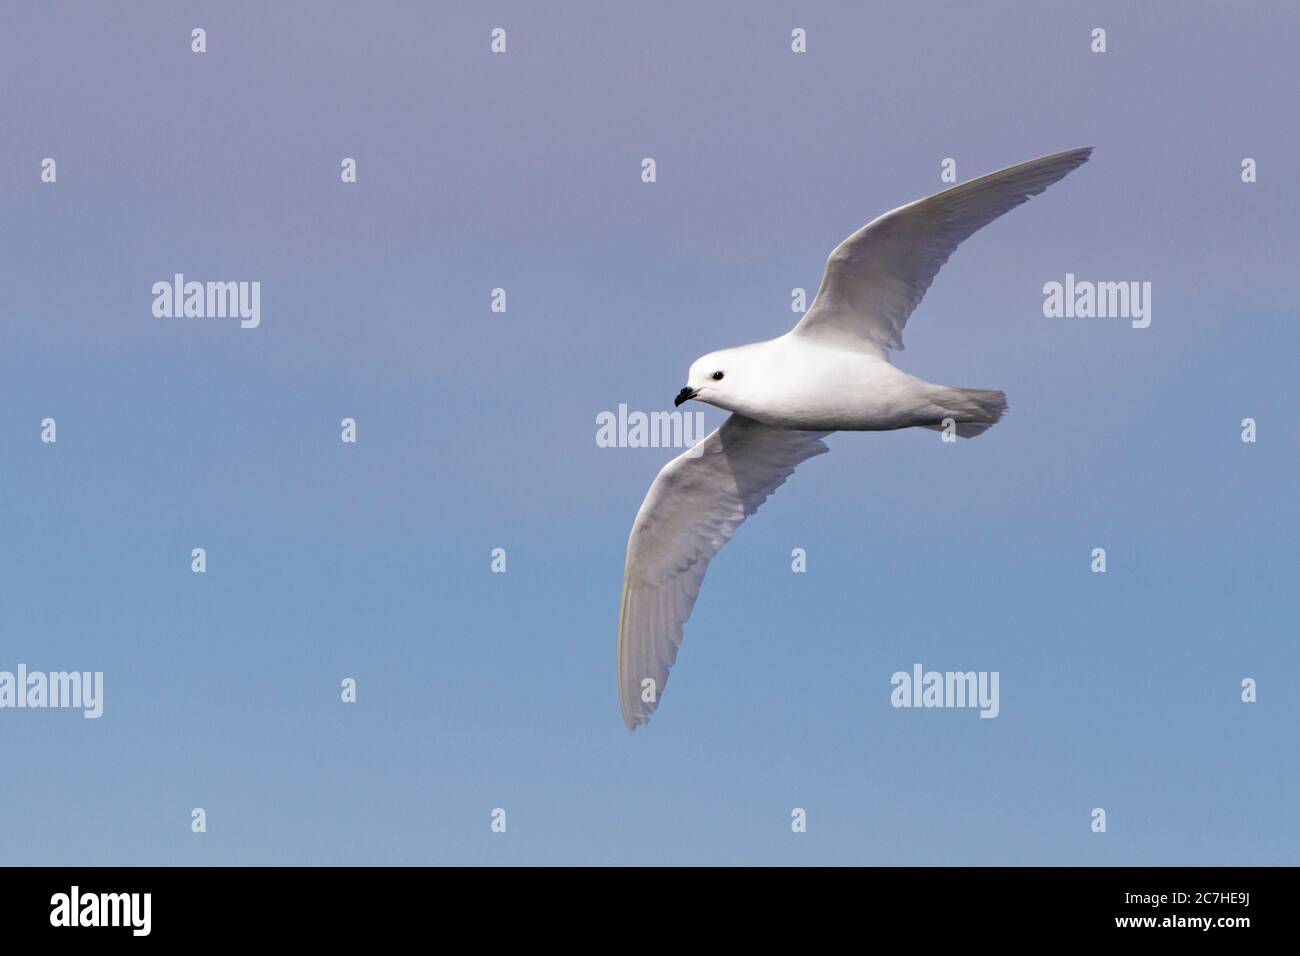 petrel de nieve en vuelo; volando por encima de la cabeza; ojo y pico en foco; aves marinas blancas contra el cielo azul; acercamiento cercano Foto de stock